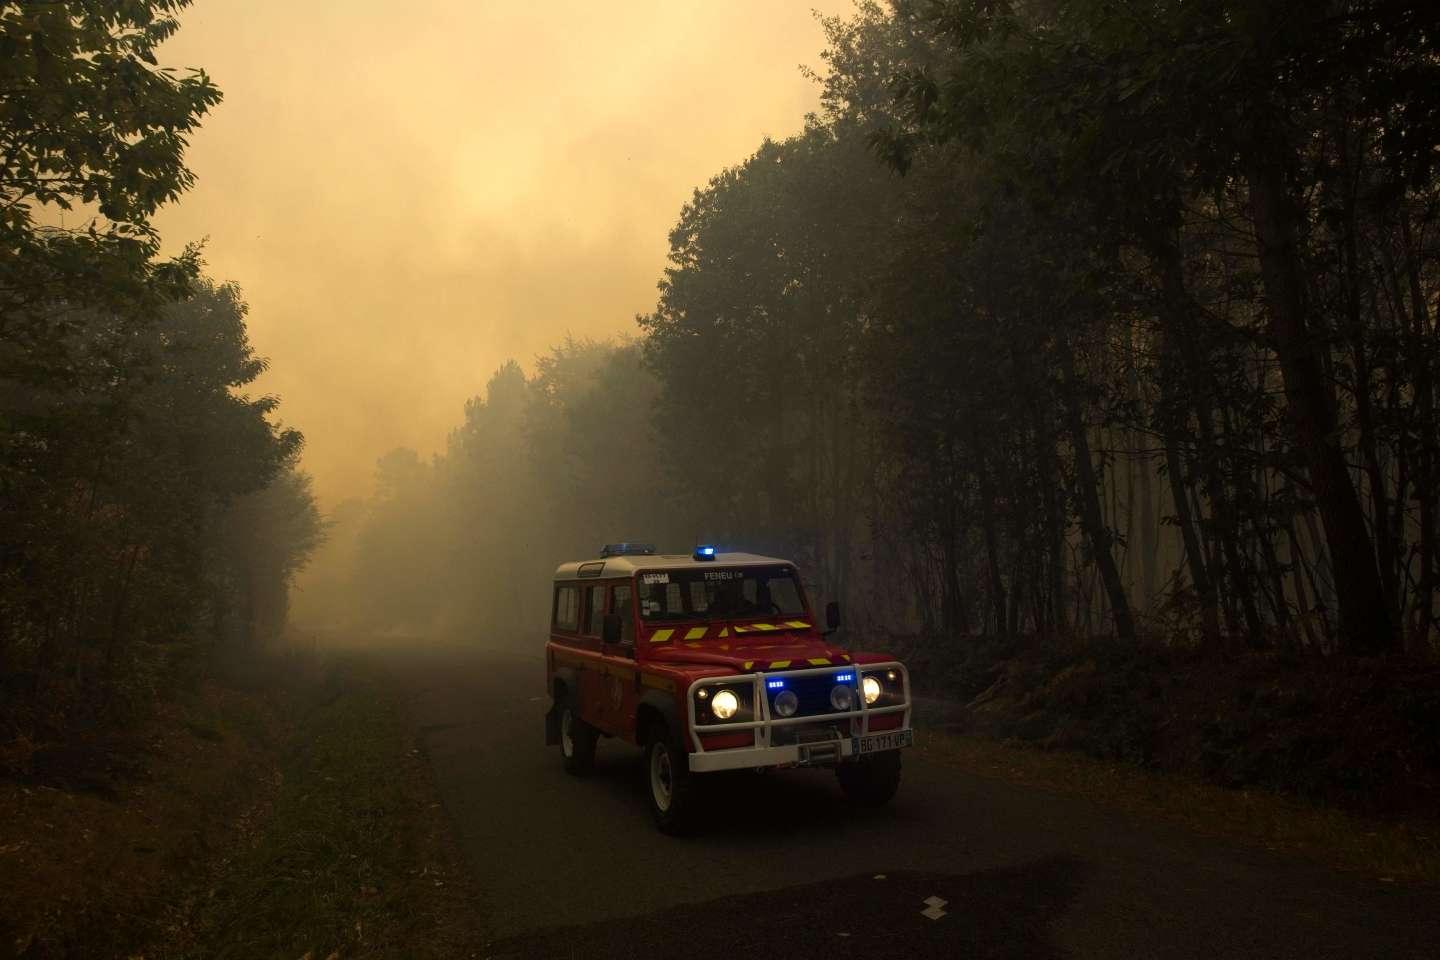 En Maine-et-Loire, un feu de forêt brûle plus de 1 200 hectares